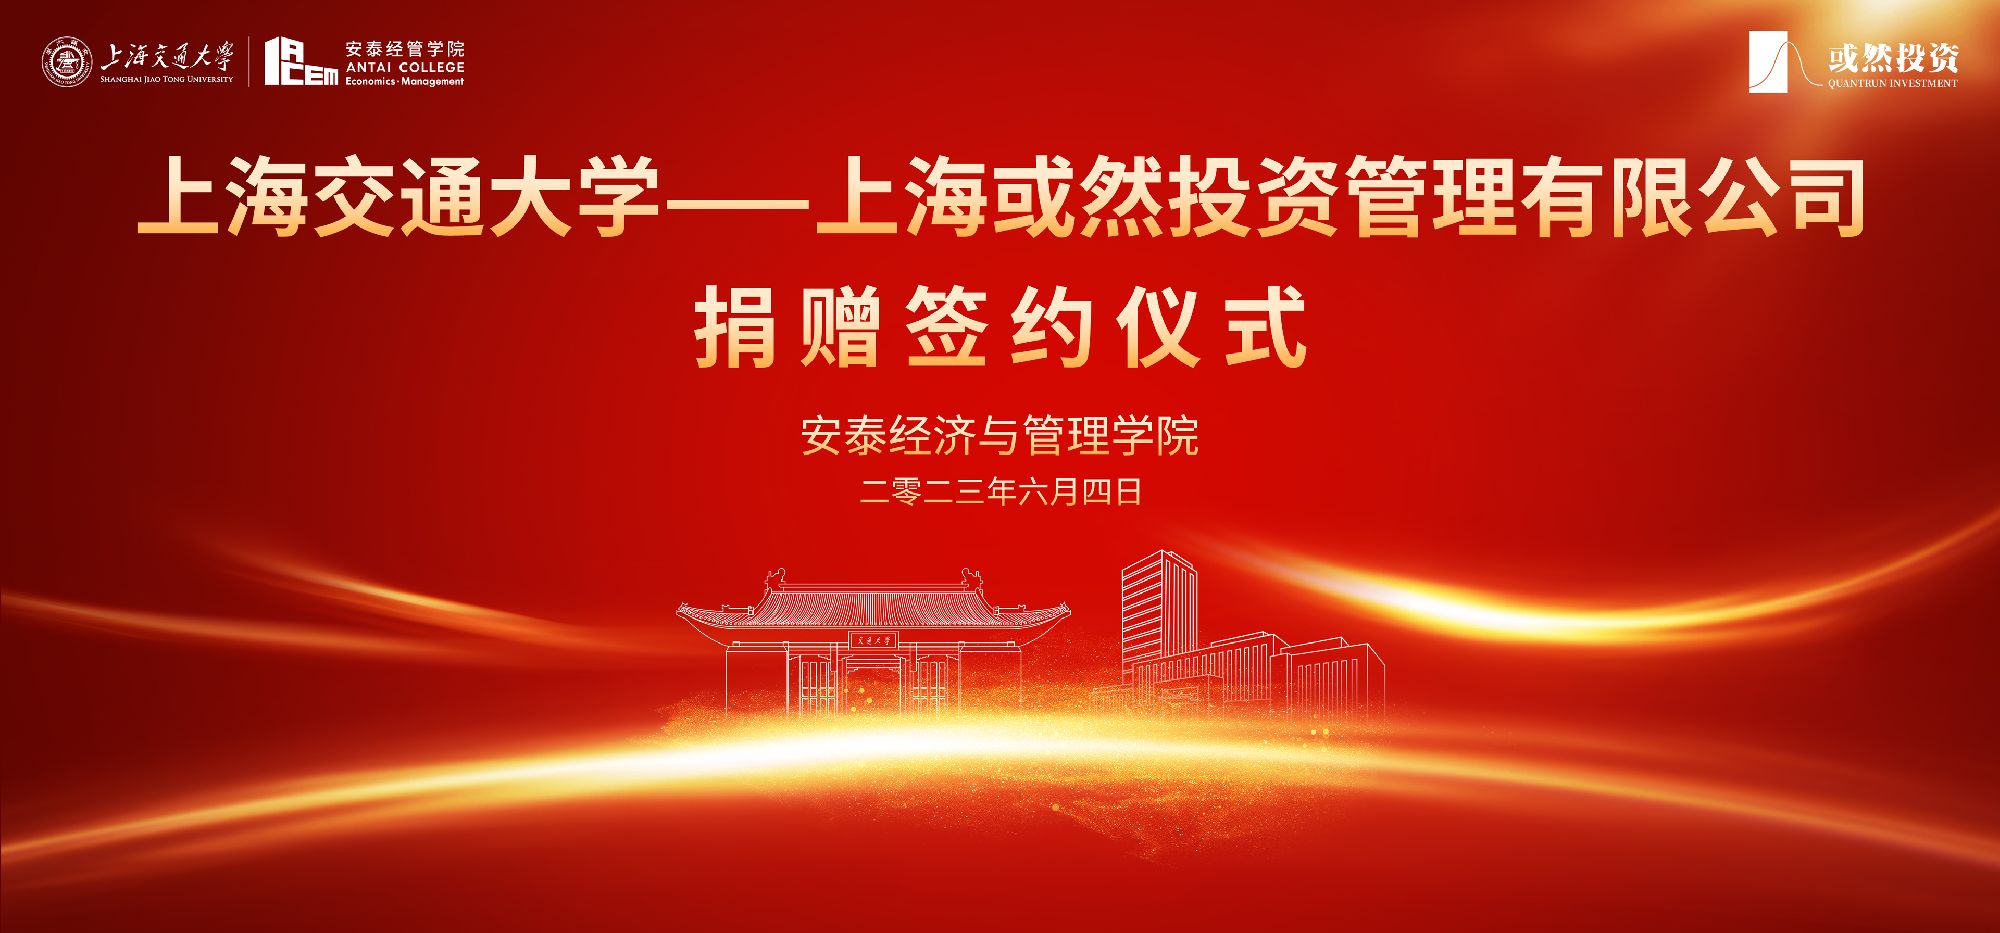 上海交通大学-上海或然投资管理有限公司捐赠签约仪式圆满举行